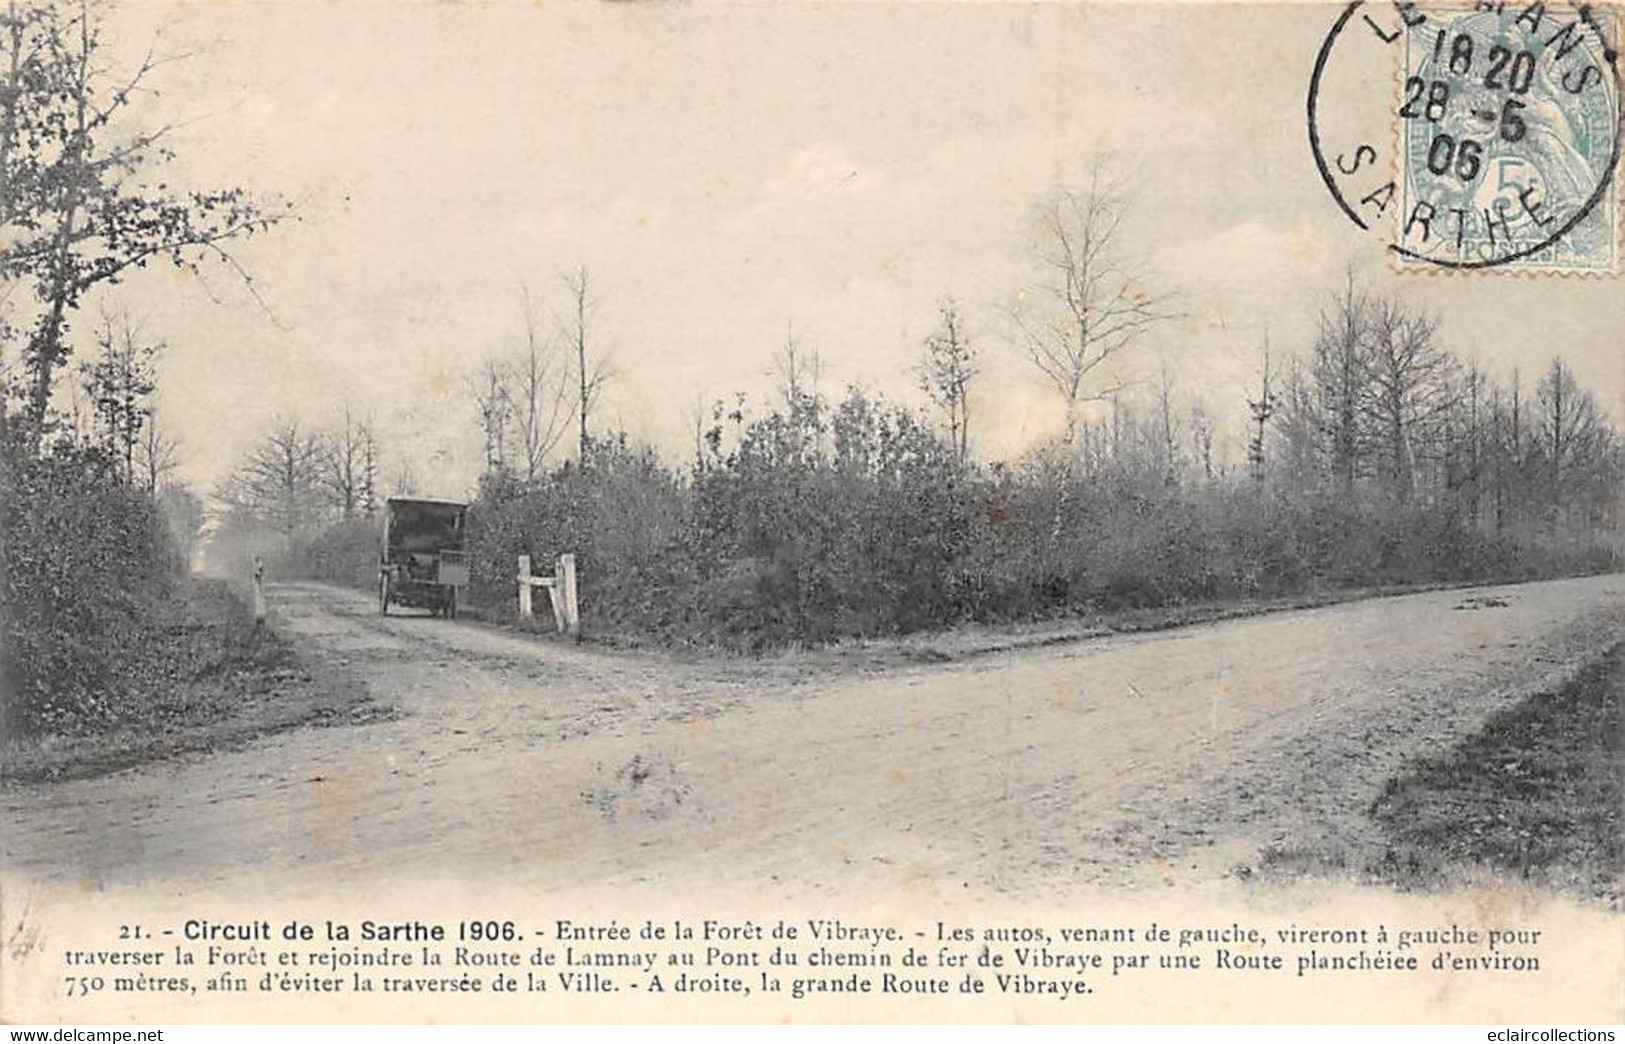 Thème Sport automobile    :Circuit de La Sarthe 1906 . 39 cartes numérotées - manque N° 2  Edit.Garczinski   (voir scan)